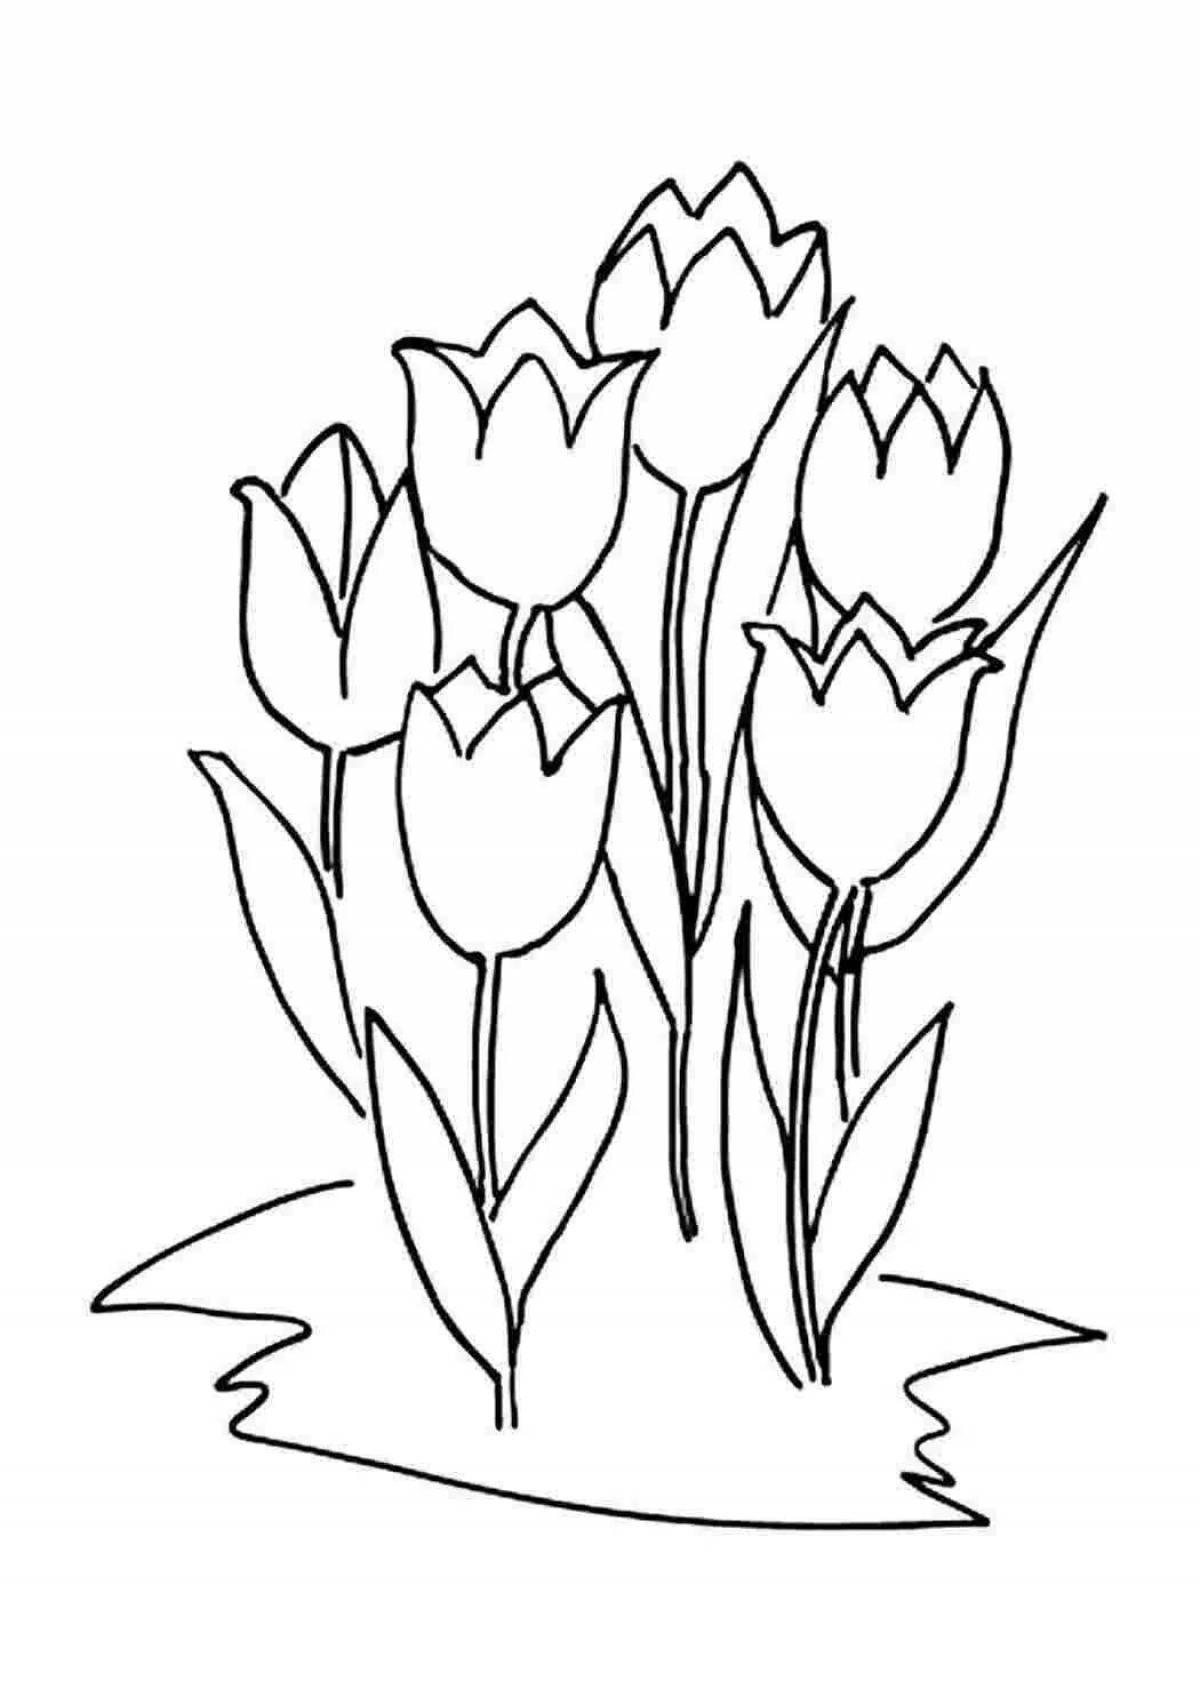 Раскраска яркие весенние тюльпаны